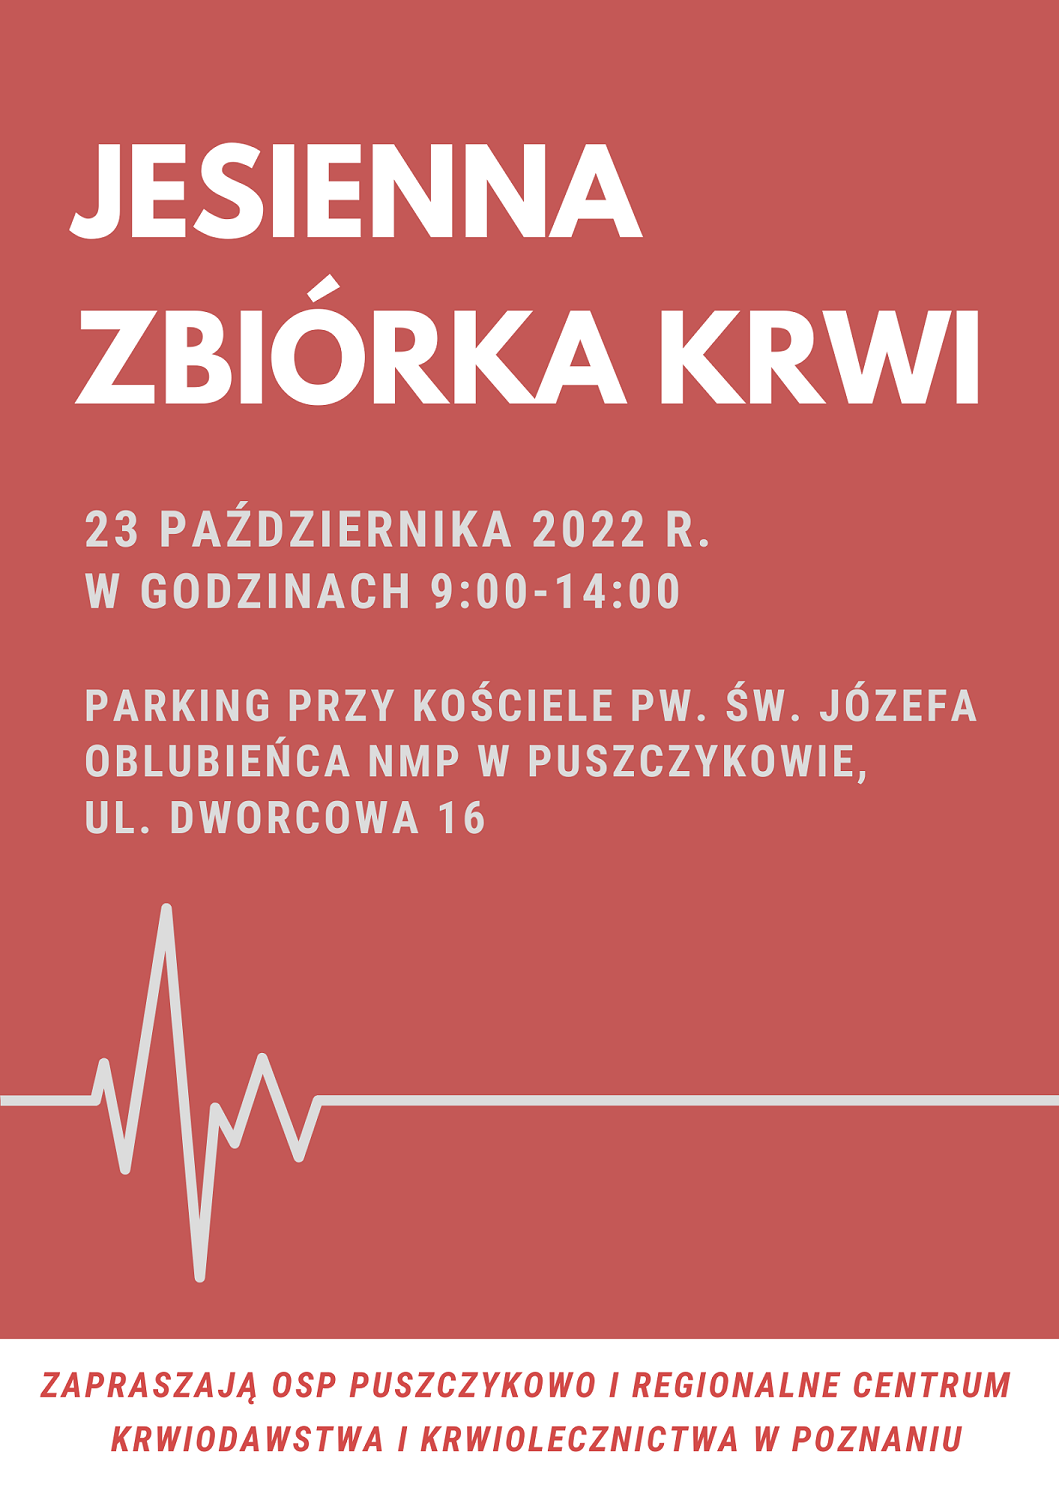 OSP Puszczykowo i Regionalne Centrum Krwiodawstwa i Krwiolecznictwa w Poznaniu zapraszają na Jesienną zbiórkę krwi.